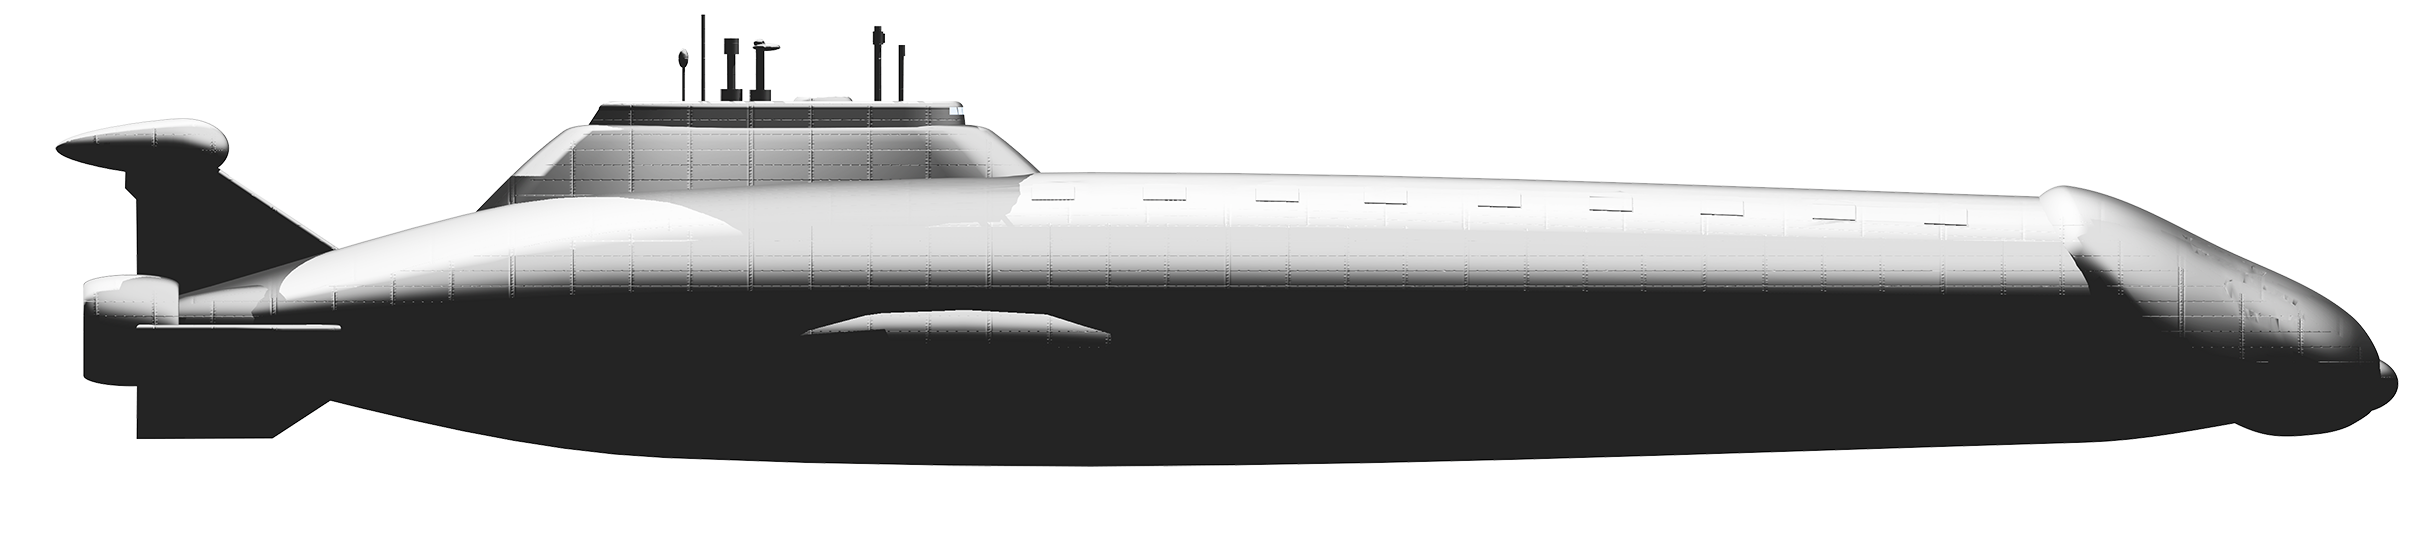 Submarine clipart nuclear.